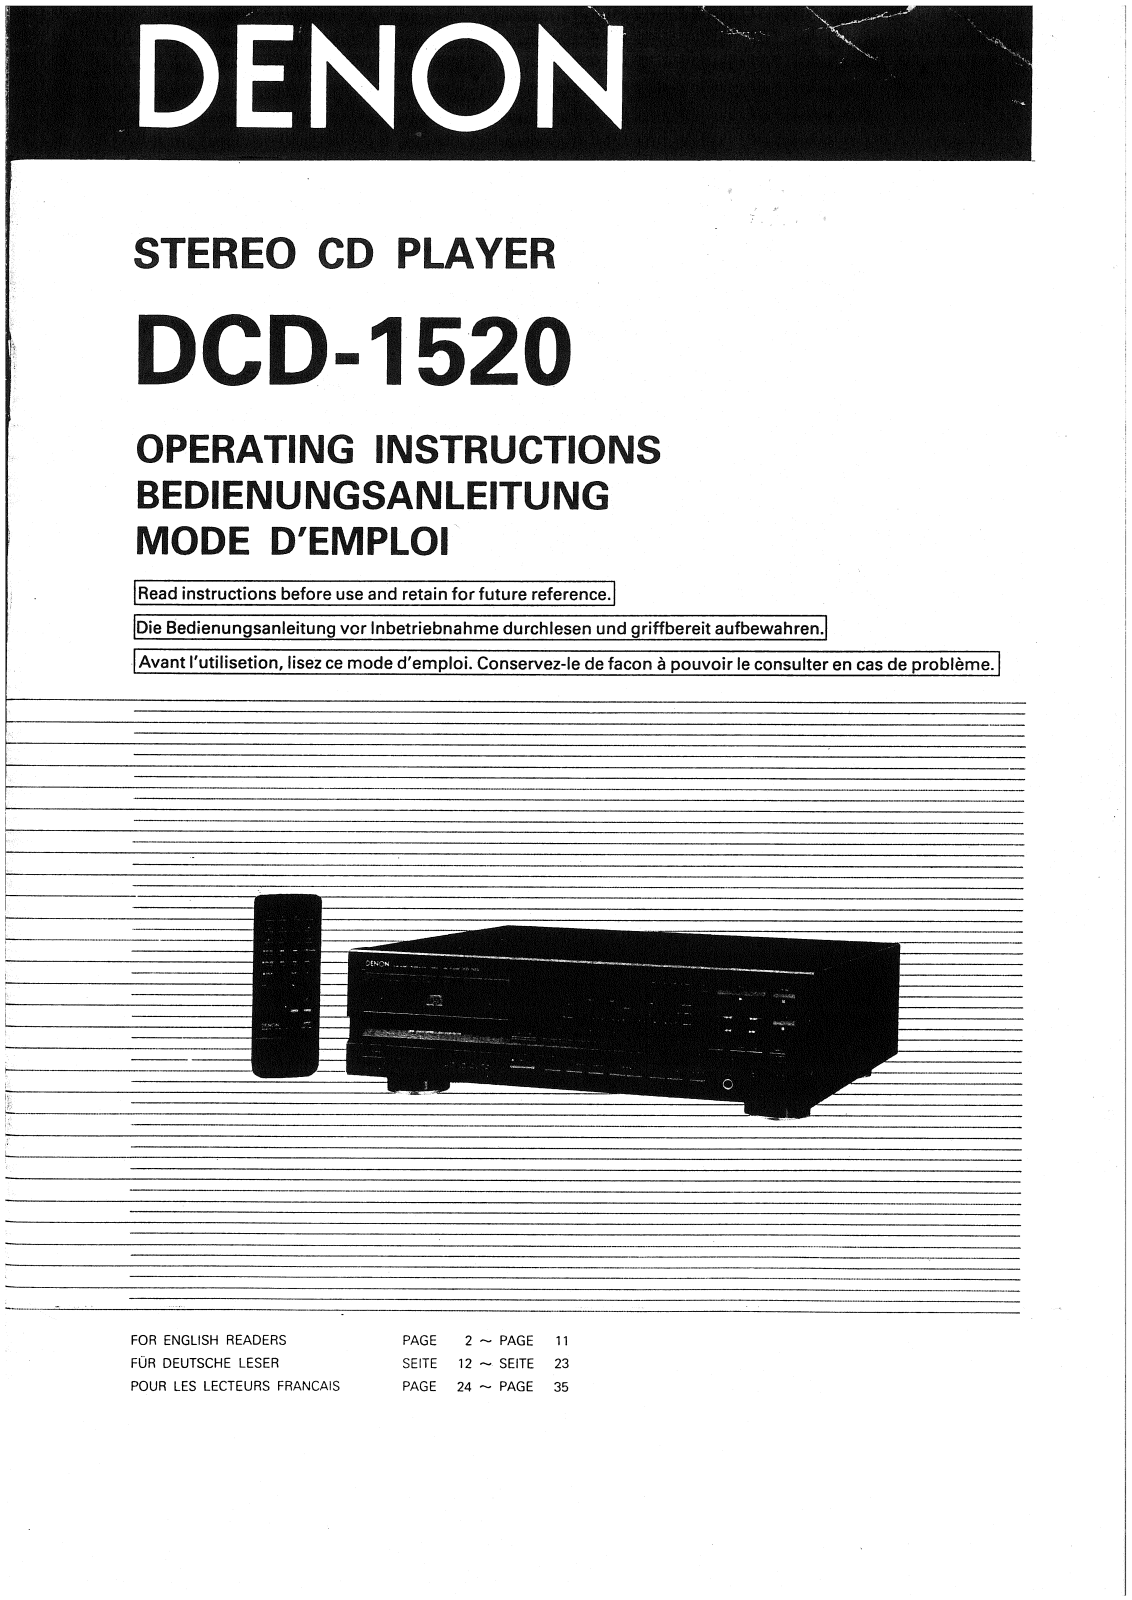 Denon DCD-1520 Owner's Manual